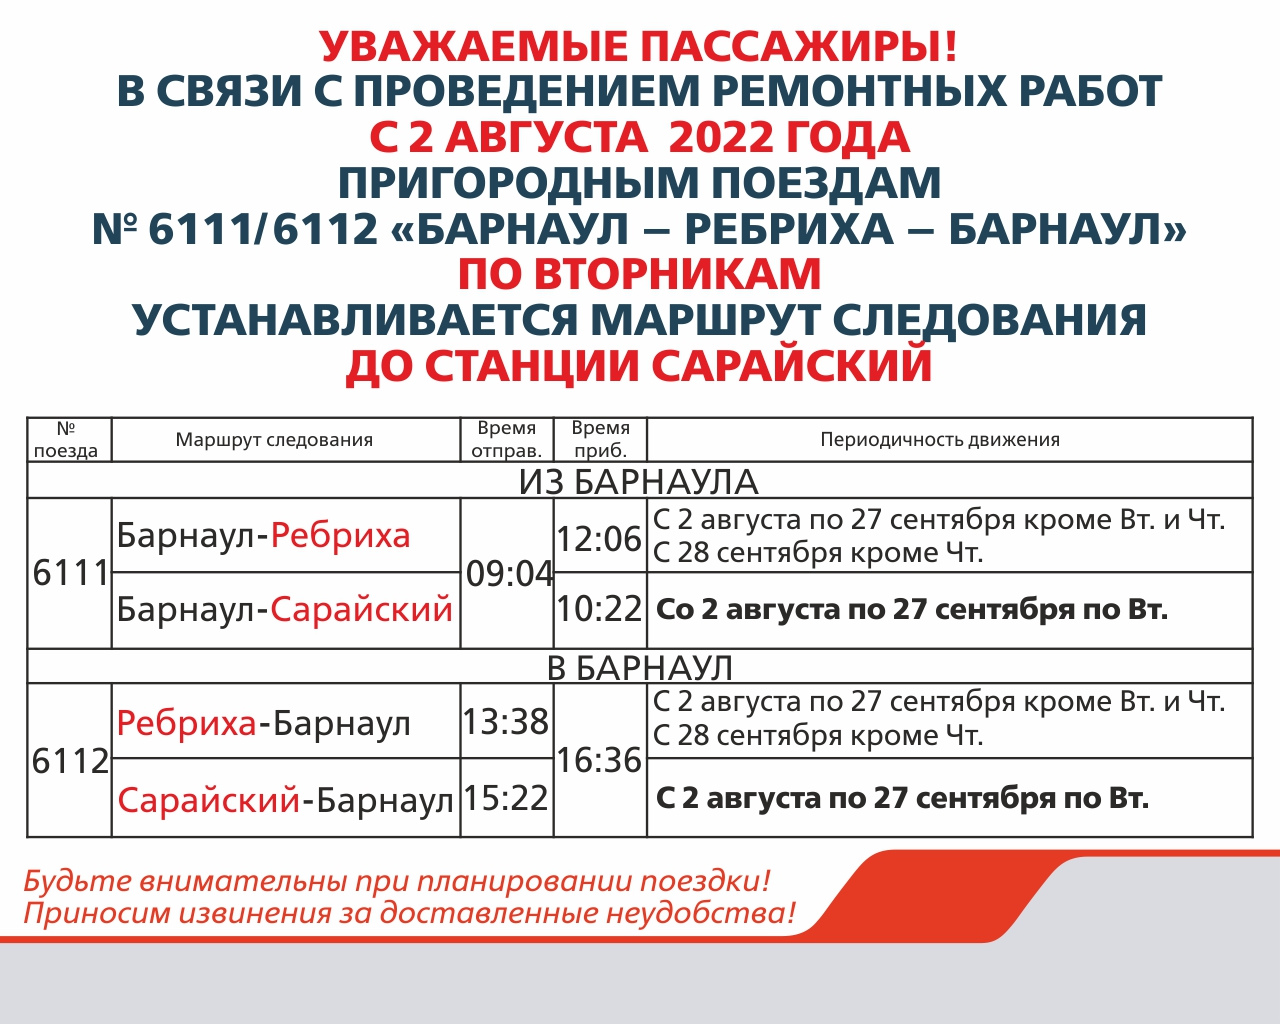 Компания Алтай-Пригород информирует об изменении расписания пригородных поездов, в связи с плановым ремонтом пути